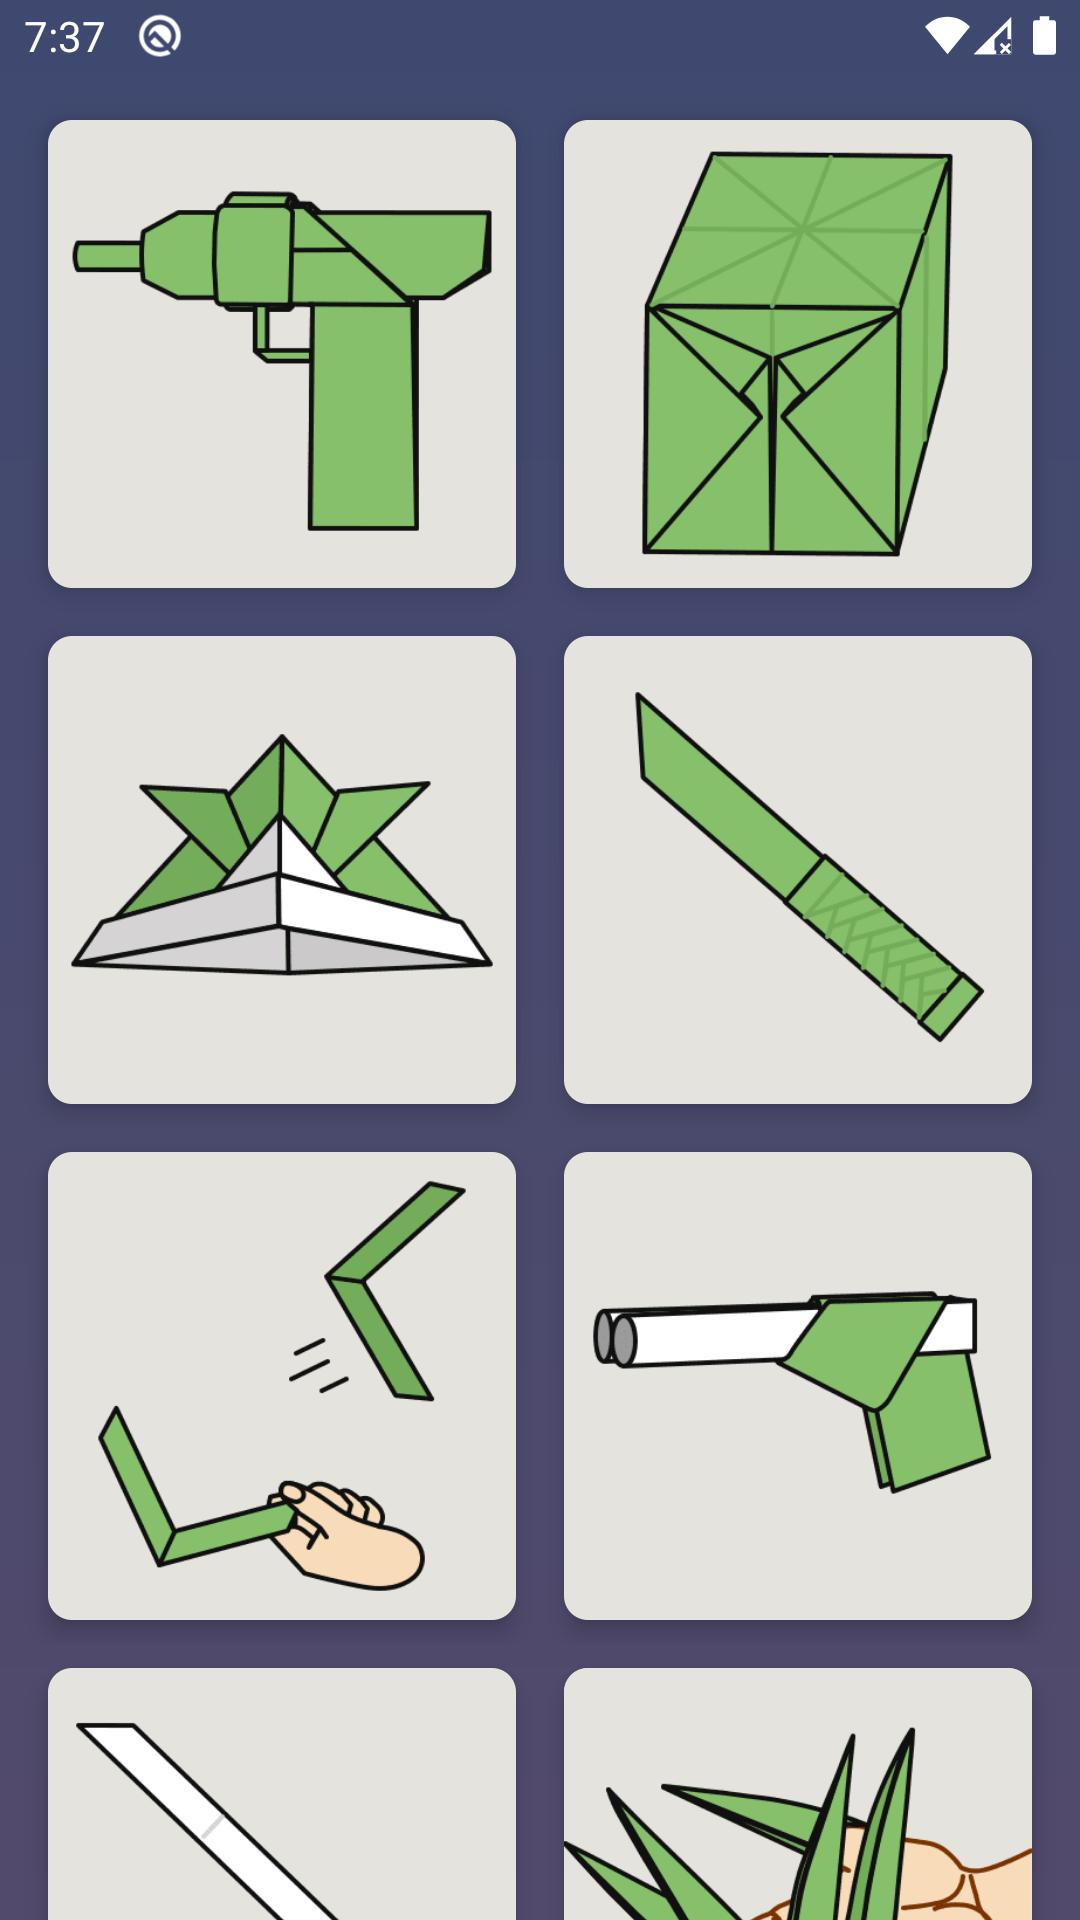 Как сделать из бумаги оригами без клея. Оригами оружие. Поделки из бумаги без клея. Оригами из бумаги без клея. Оригами ружье.